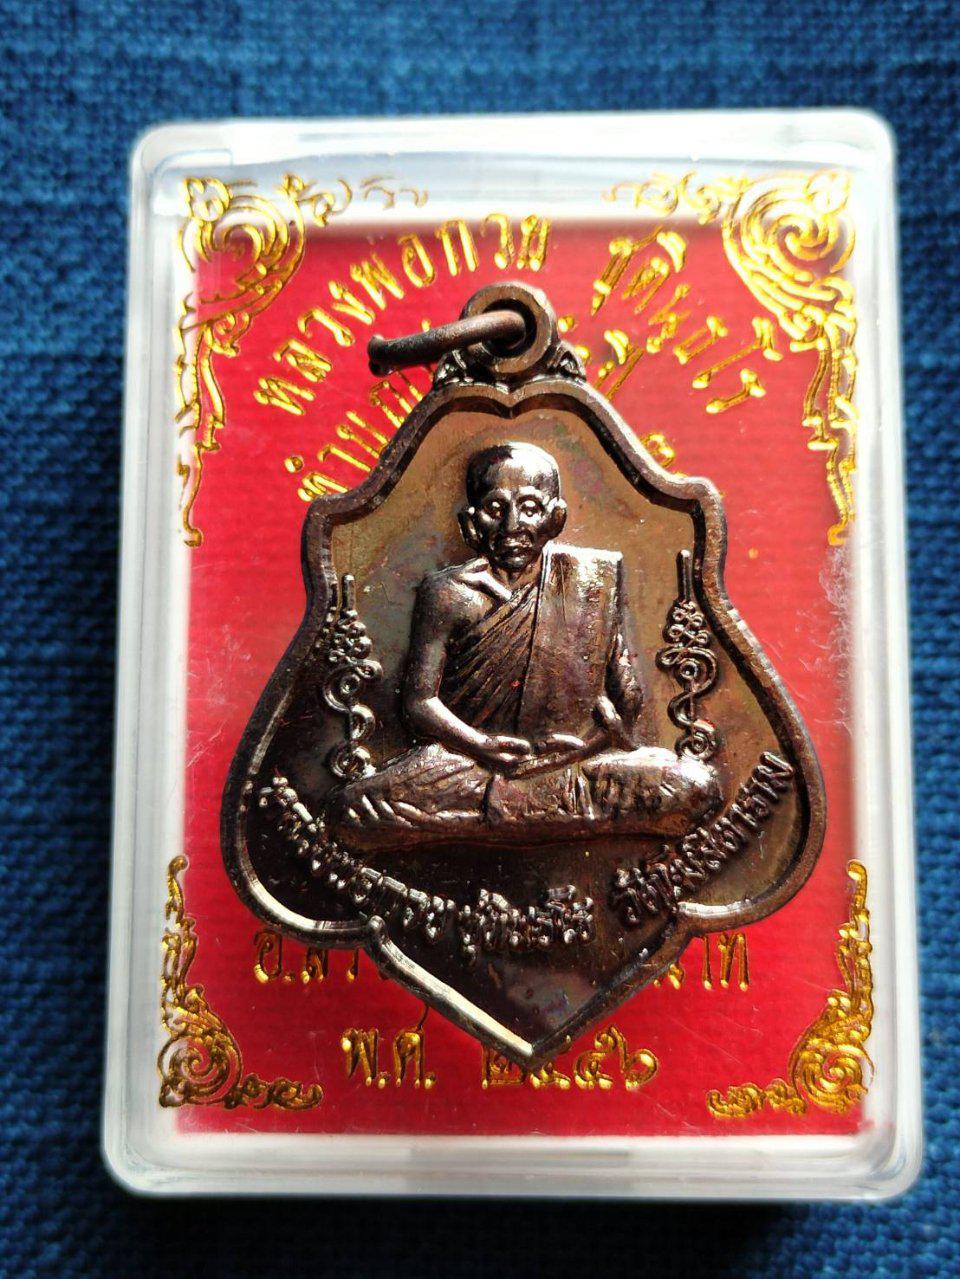 เหรียญหลังยันต์ หลวงพ่อกวย ชุตินฺธโร
วัดโฆสิตาราม ชัยนาท รุ่นปี2556 
พร้อมกล่องเดิม